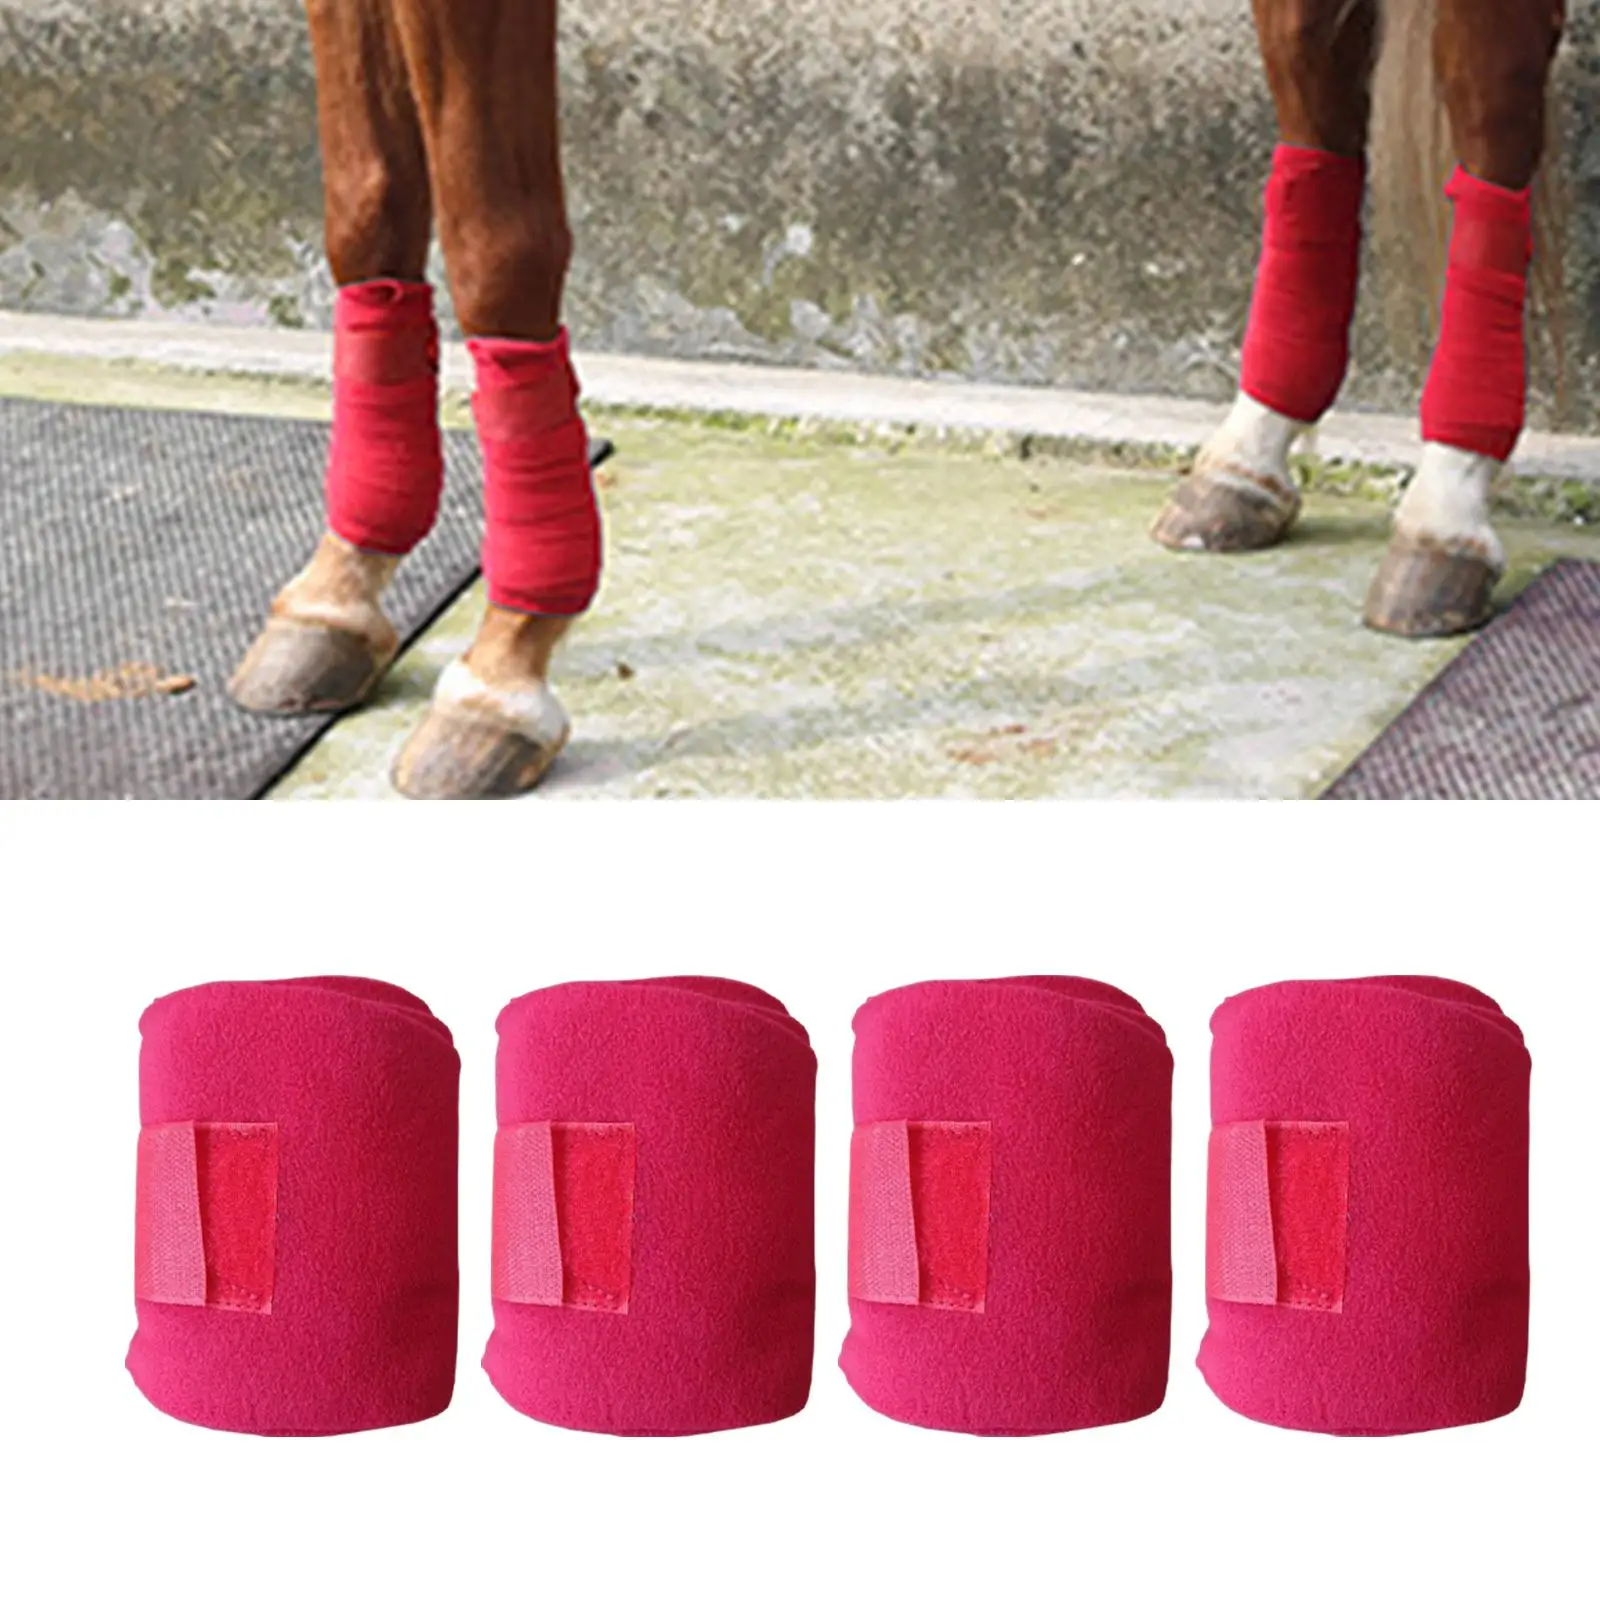 4Pcs Horse Leg Wraps, Soft Plush Horse Splint Support Riding Leg Protection Wraps, Leg Guards Bandages Equestrian Equipment Red